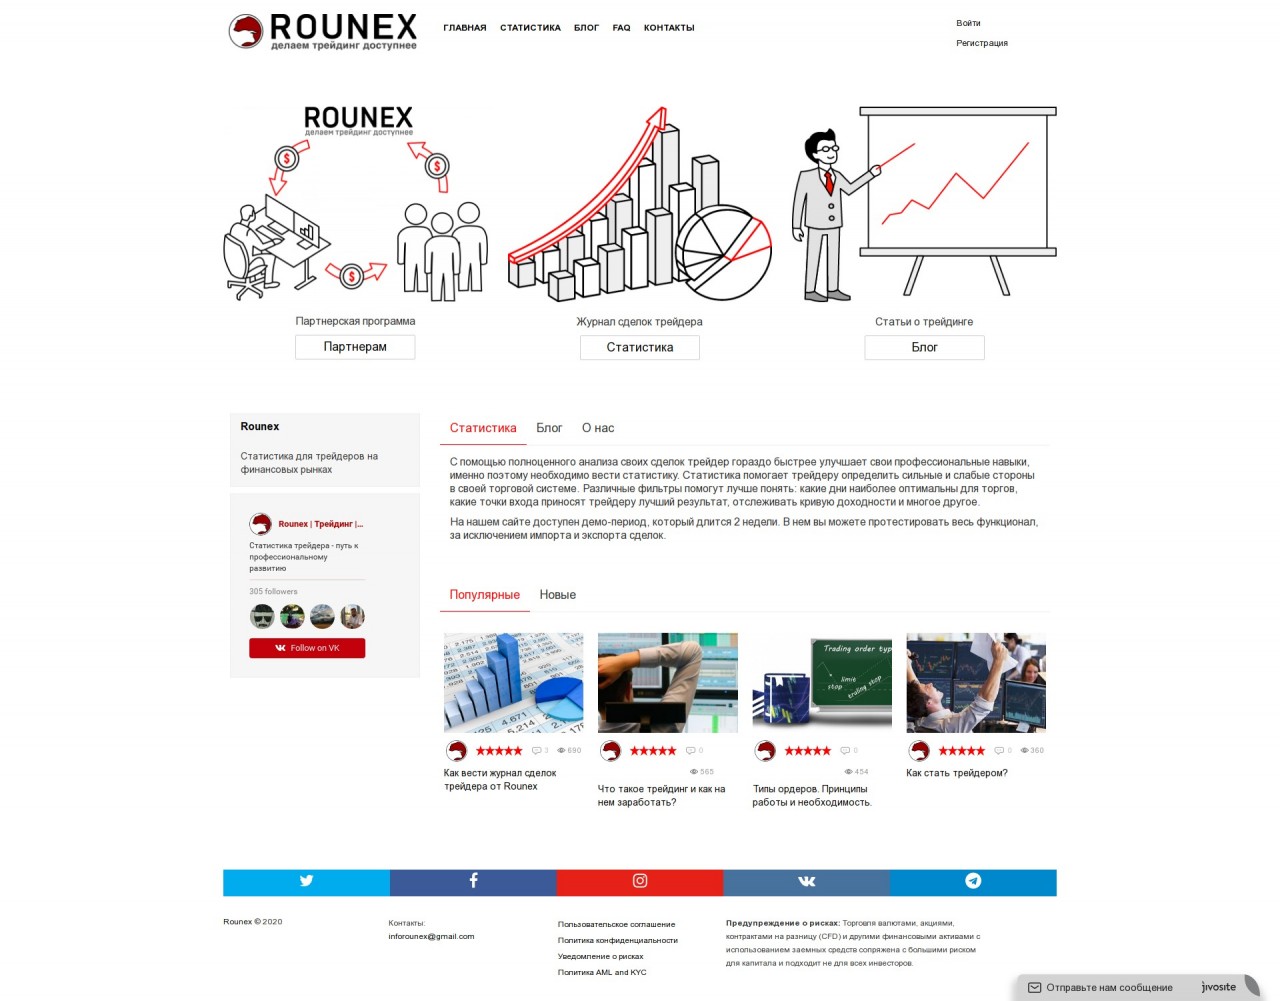 Rounex - Портал о трейдинге на Forex 0